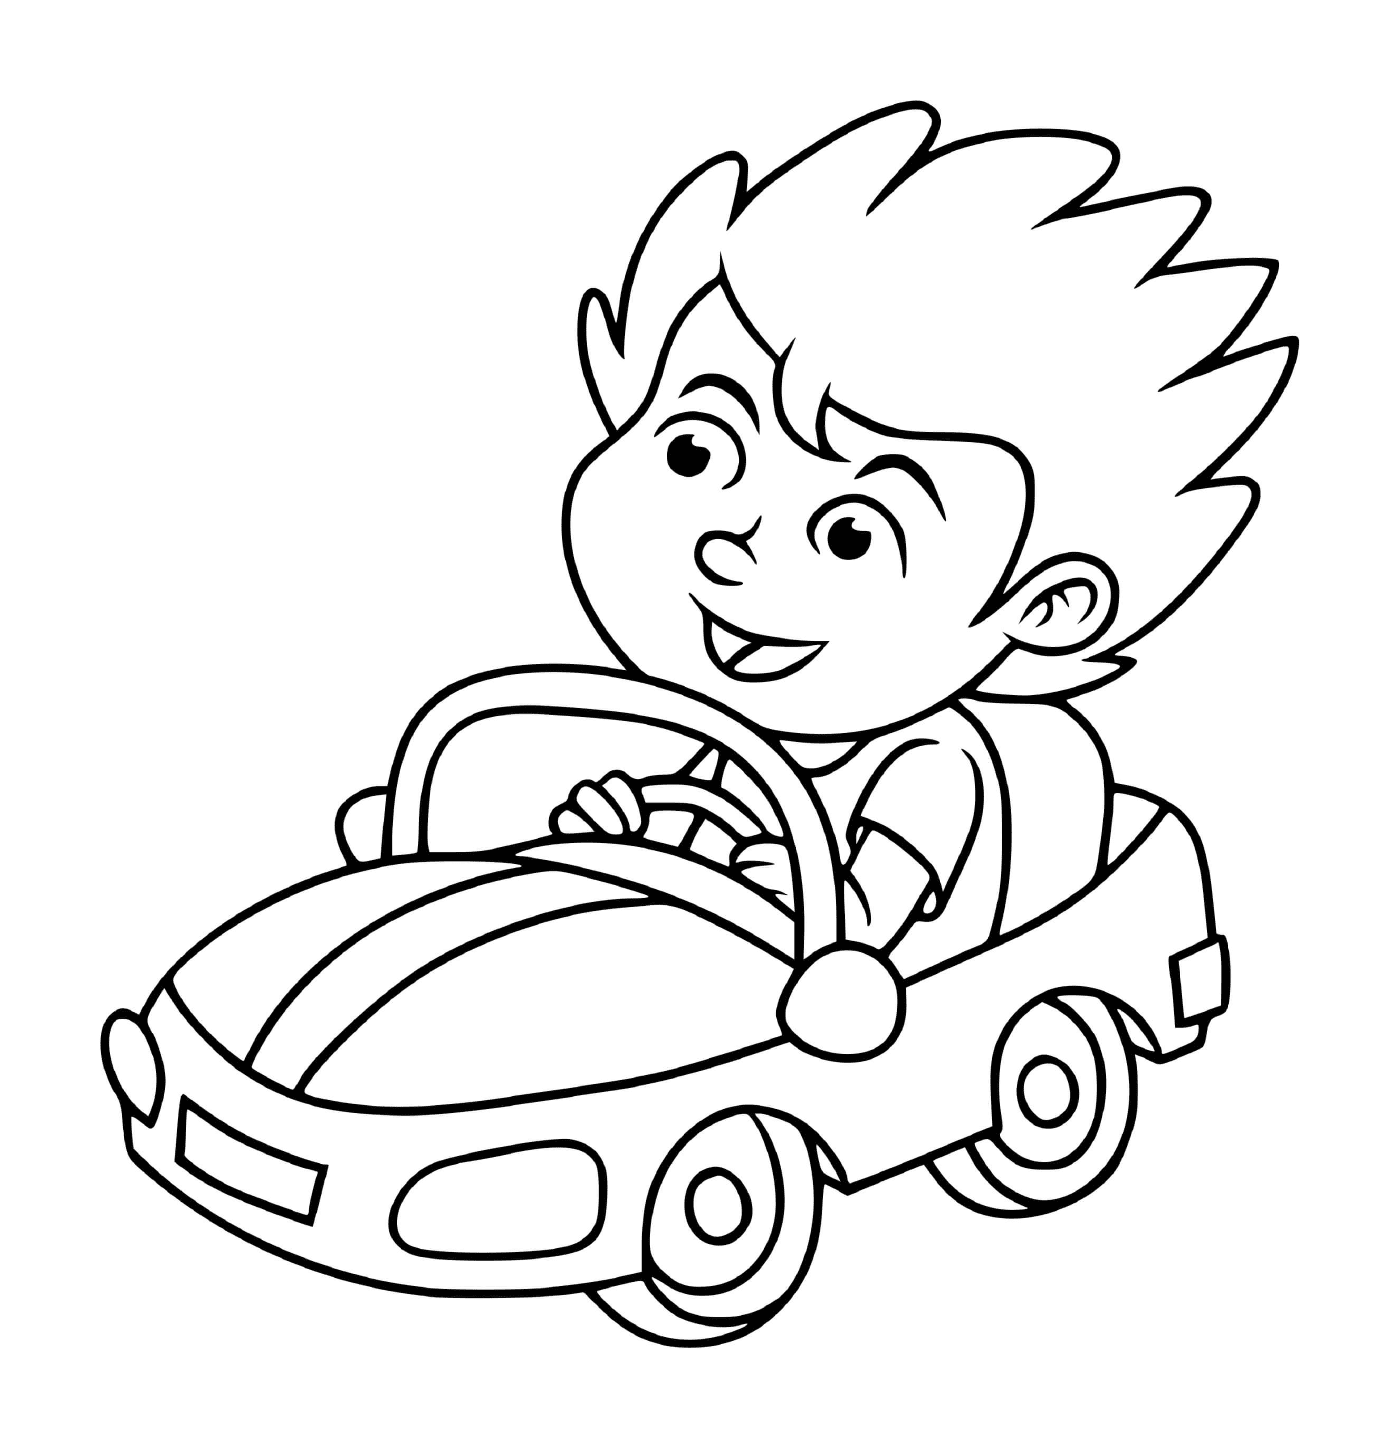  Uma criança dirige um carro com seguro 